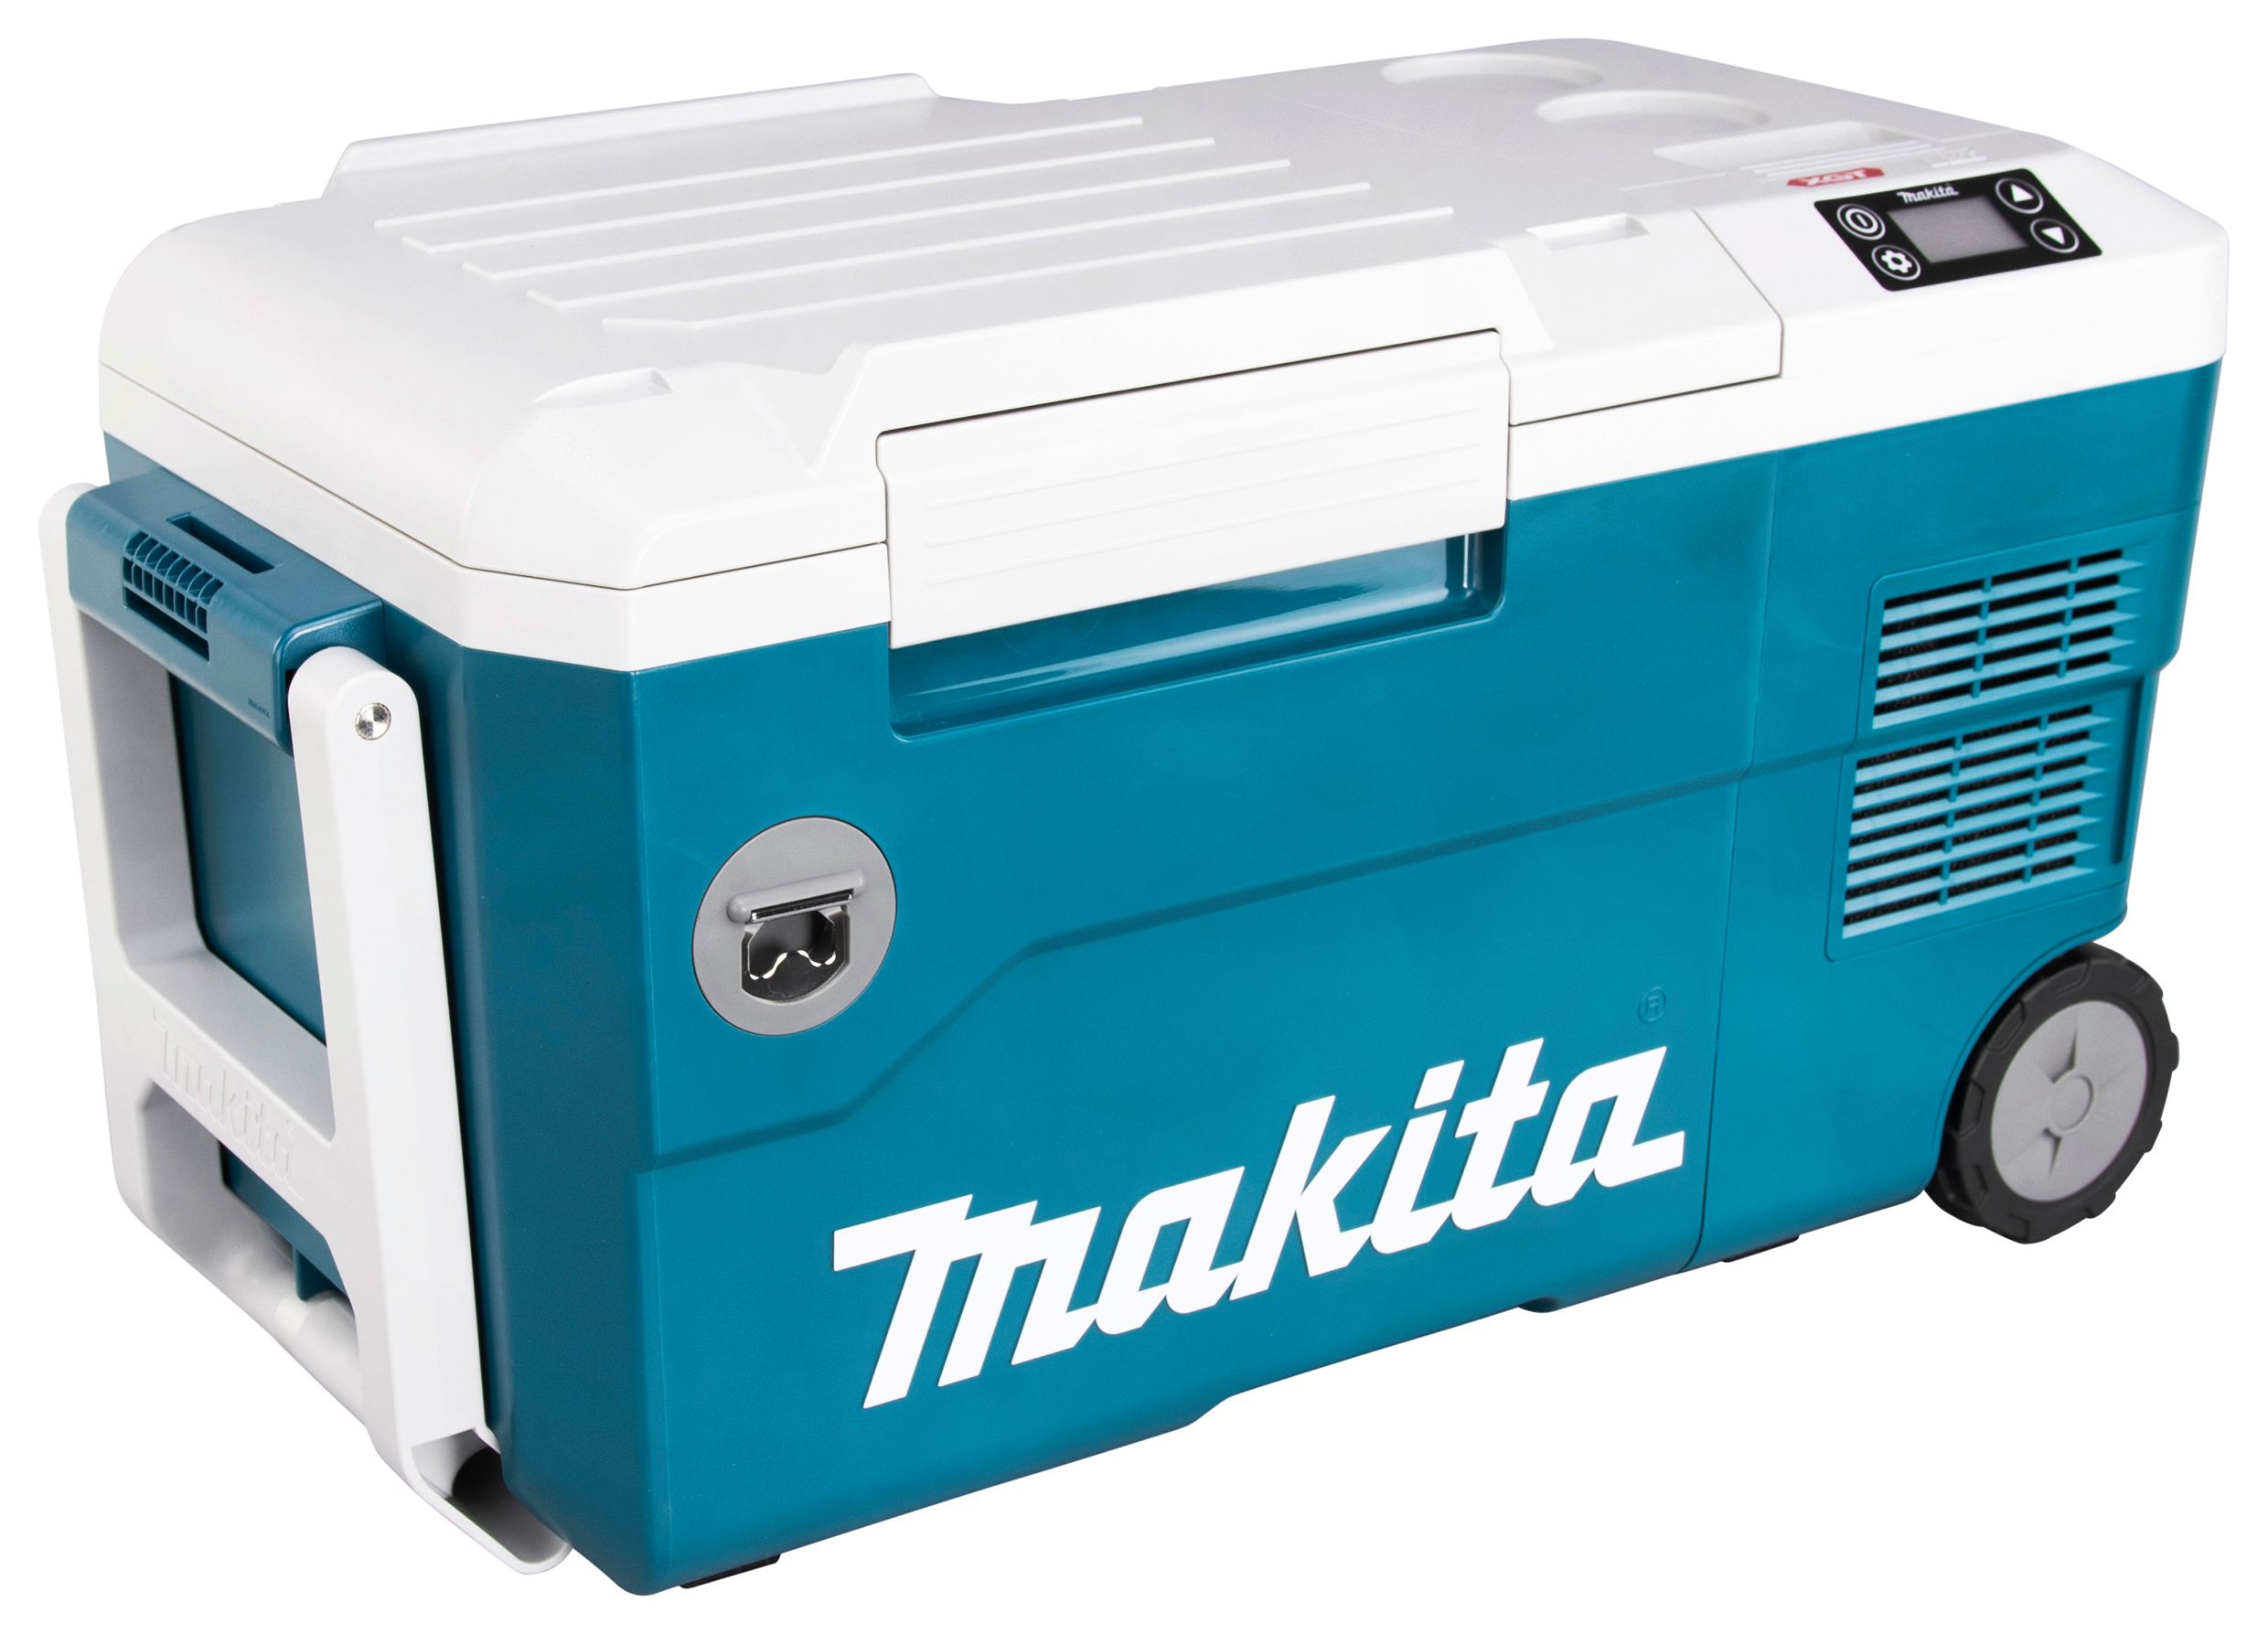 MAKITA Akku-Kompressor-Kühl- und Wärmebox CW001GZ01 40V max. günstig kaufen